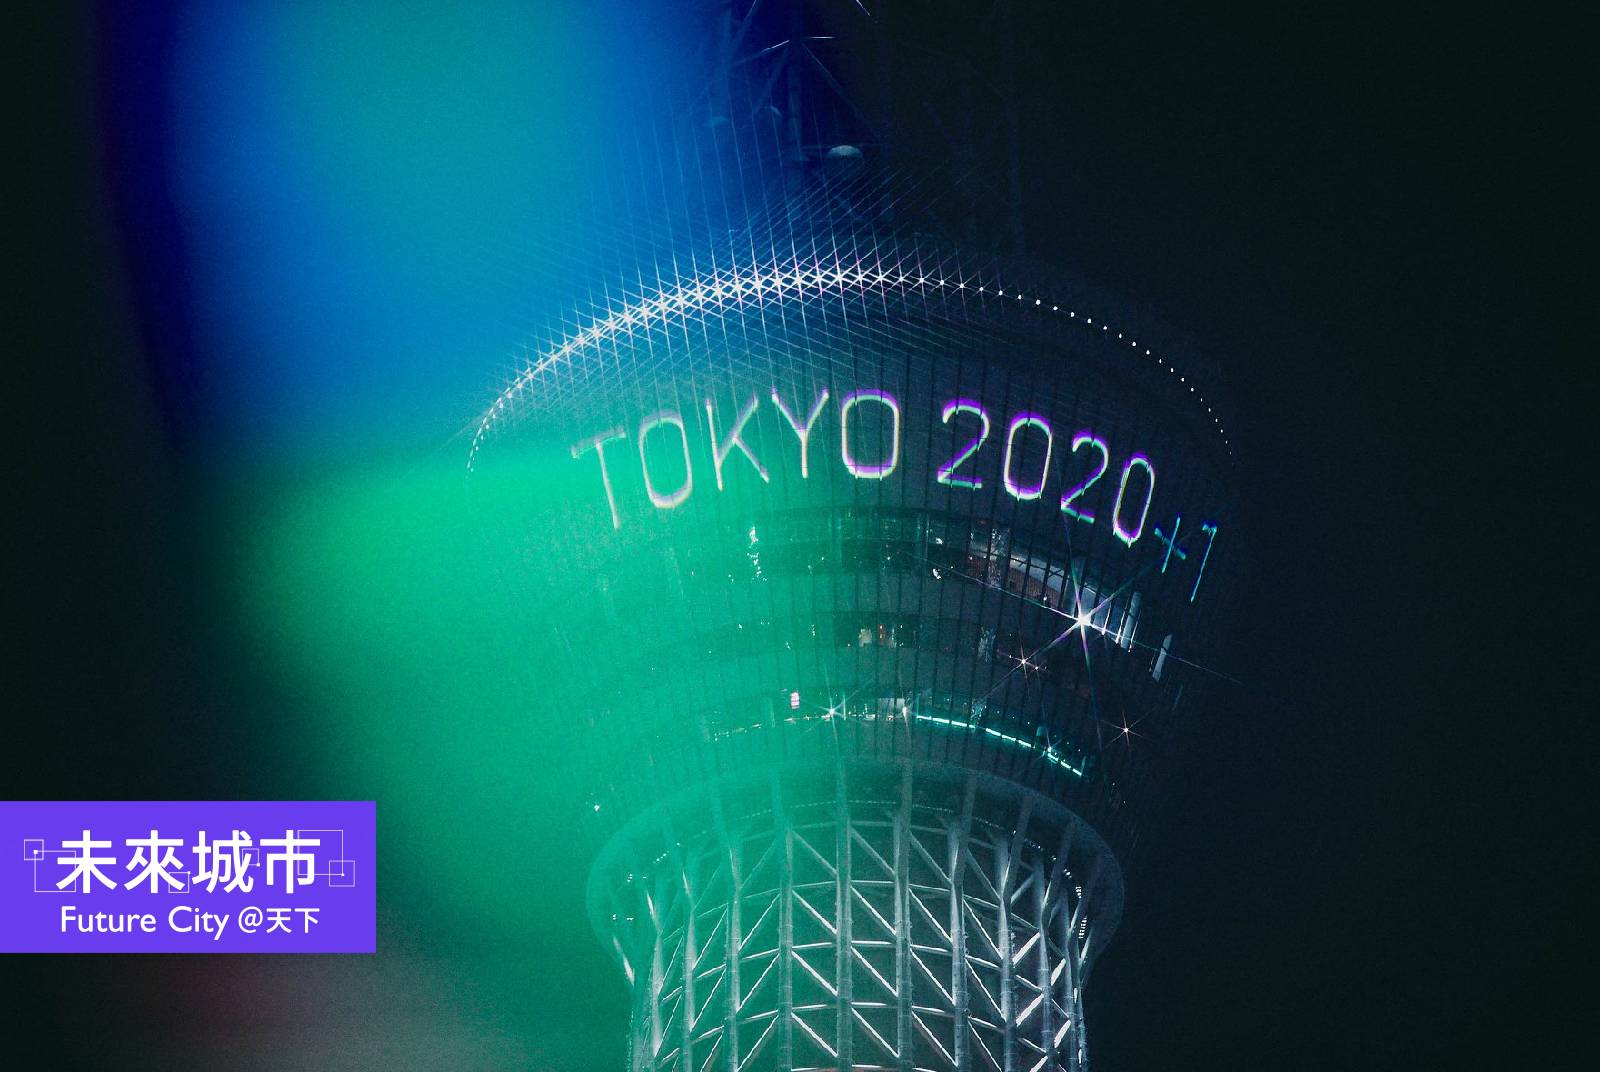 2020東京奧運會將在七月23日開幕。